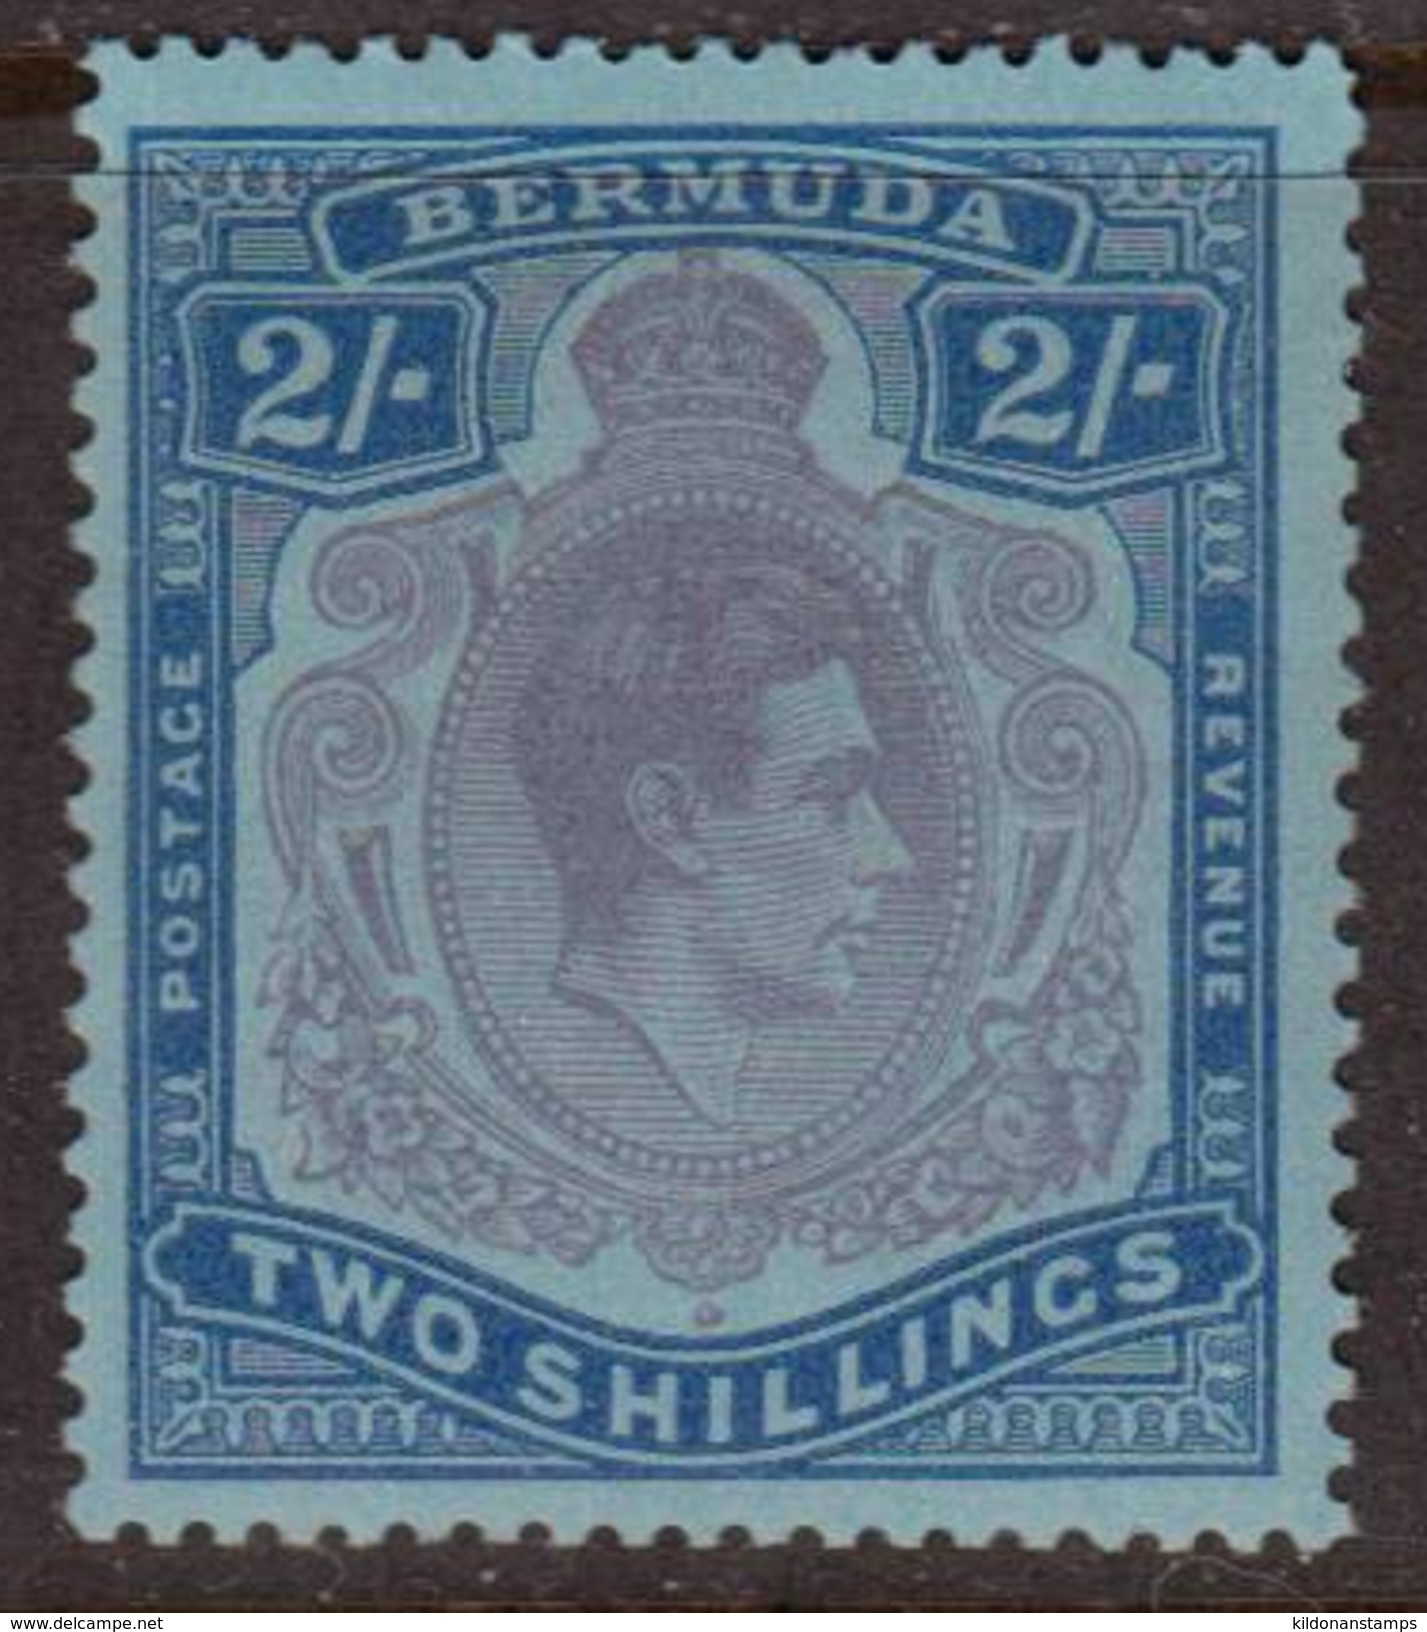 Bermuda 1950 George VI, Mint No Hinge, Sc# 123, SG 116e - Bermudes